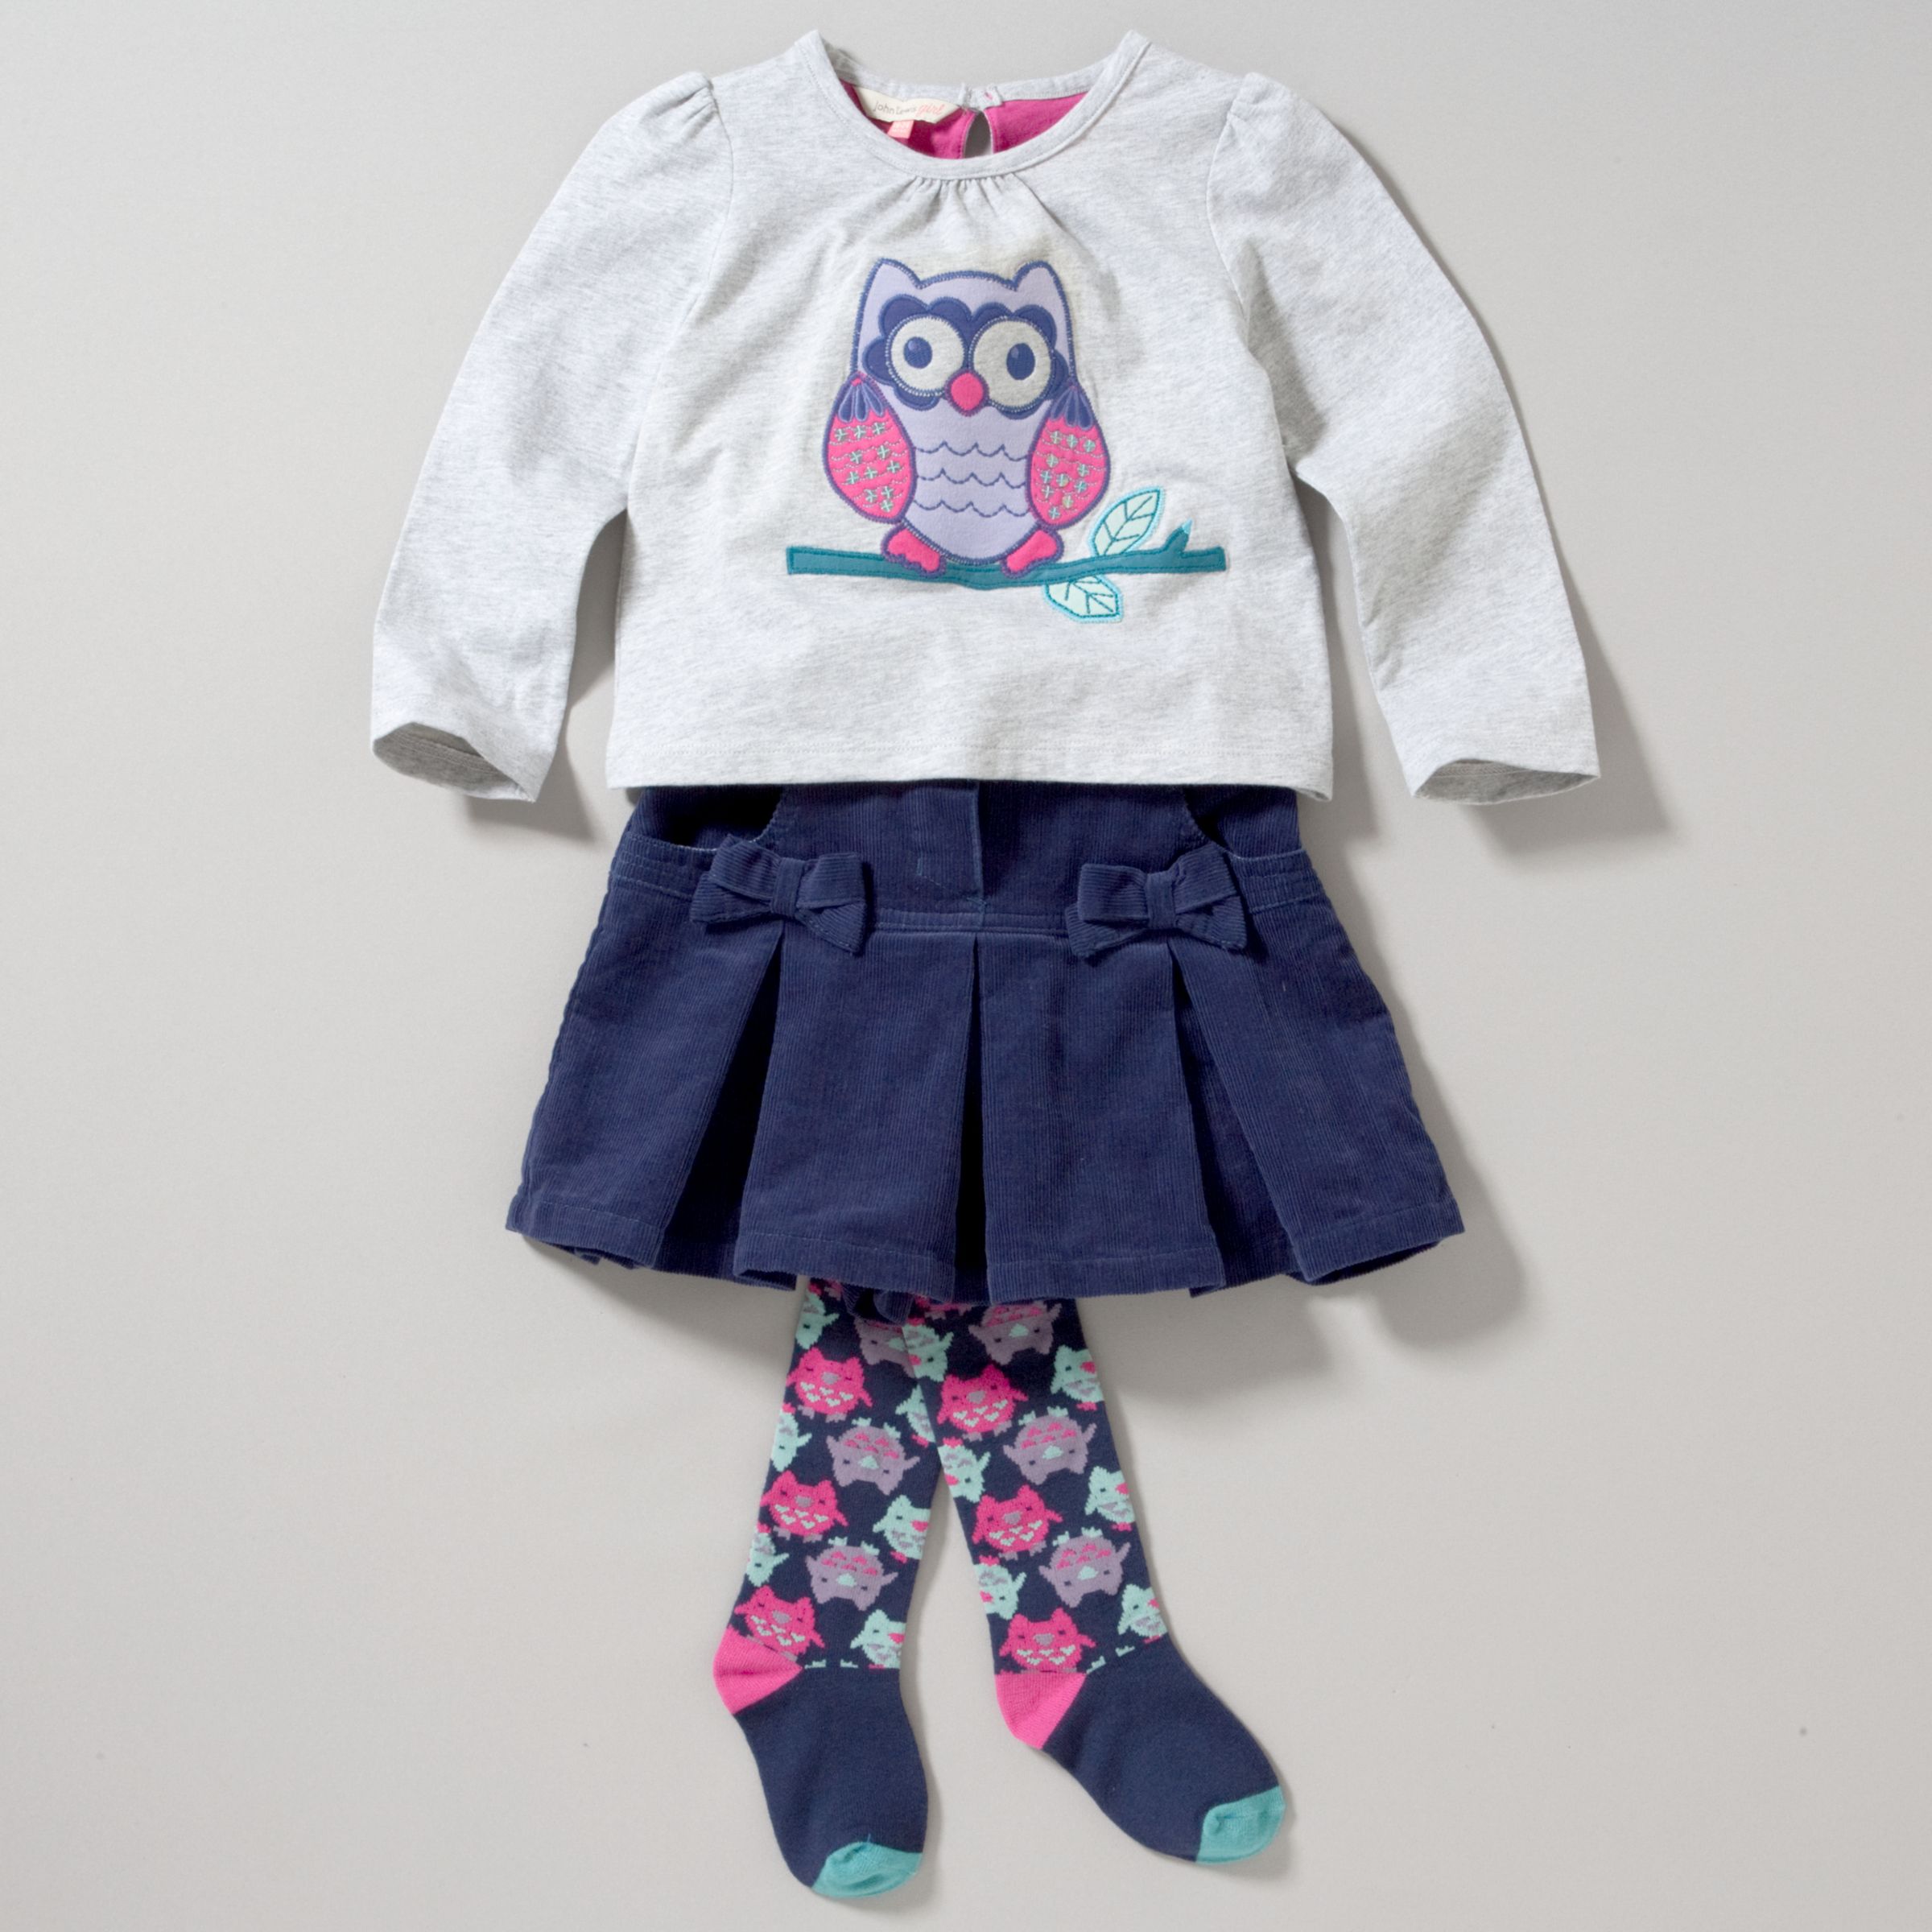 Owl T-Shirt and Cord Skirt Set,